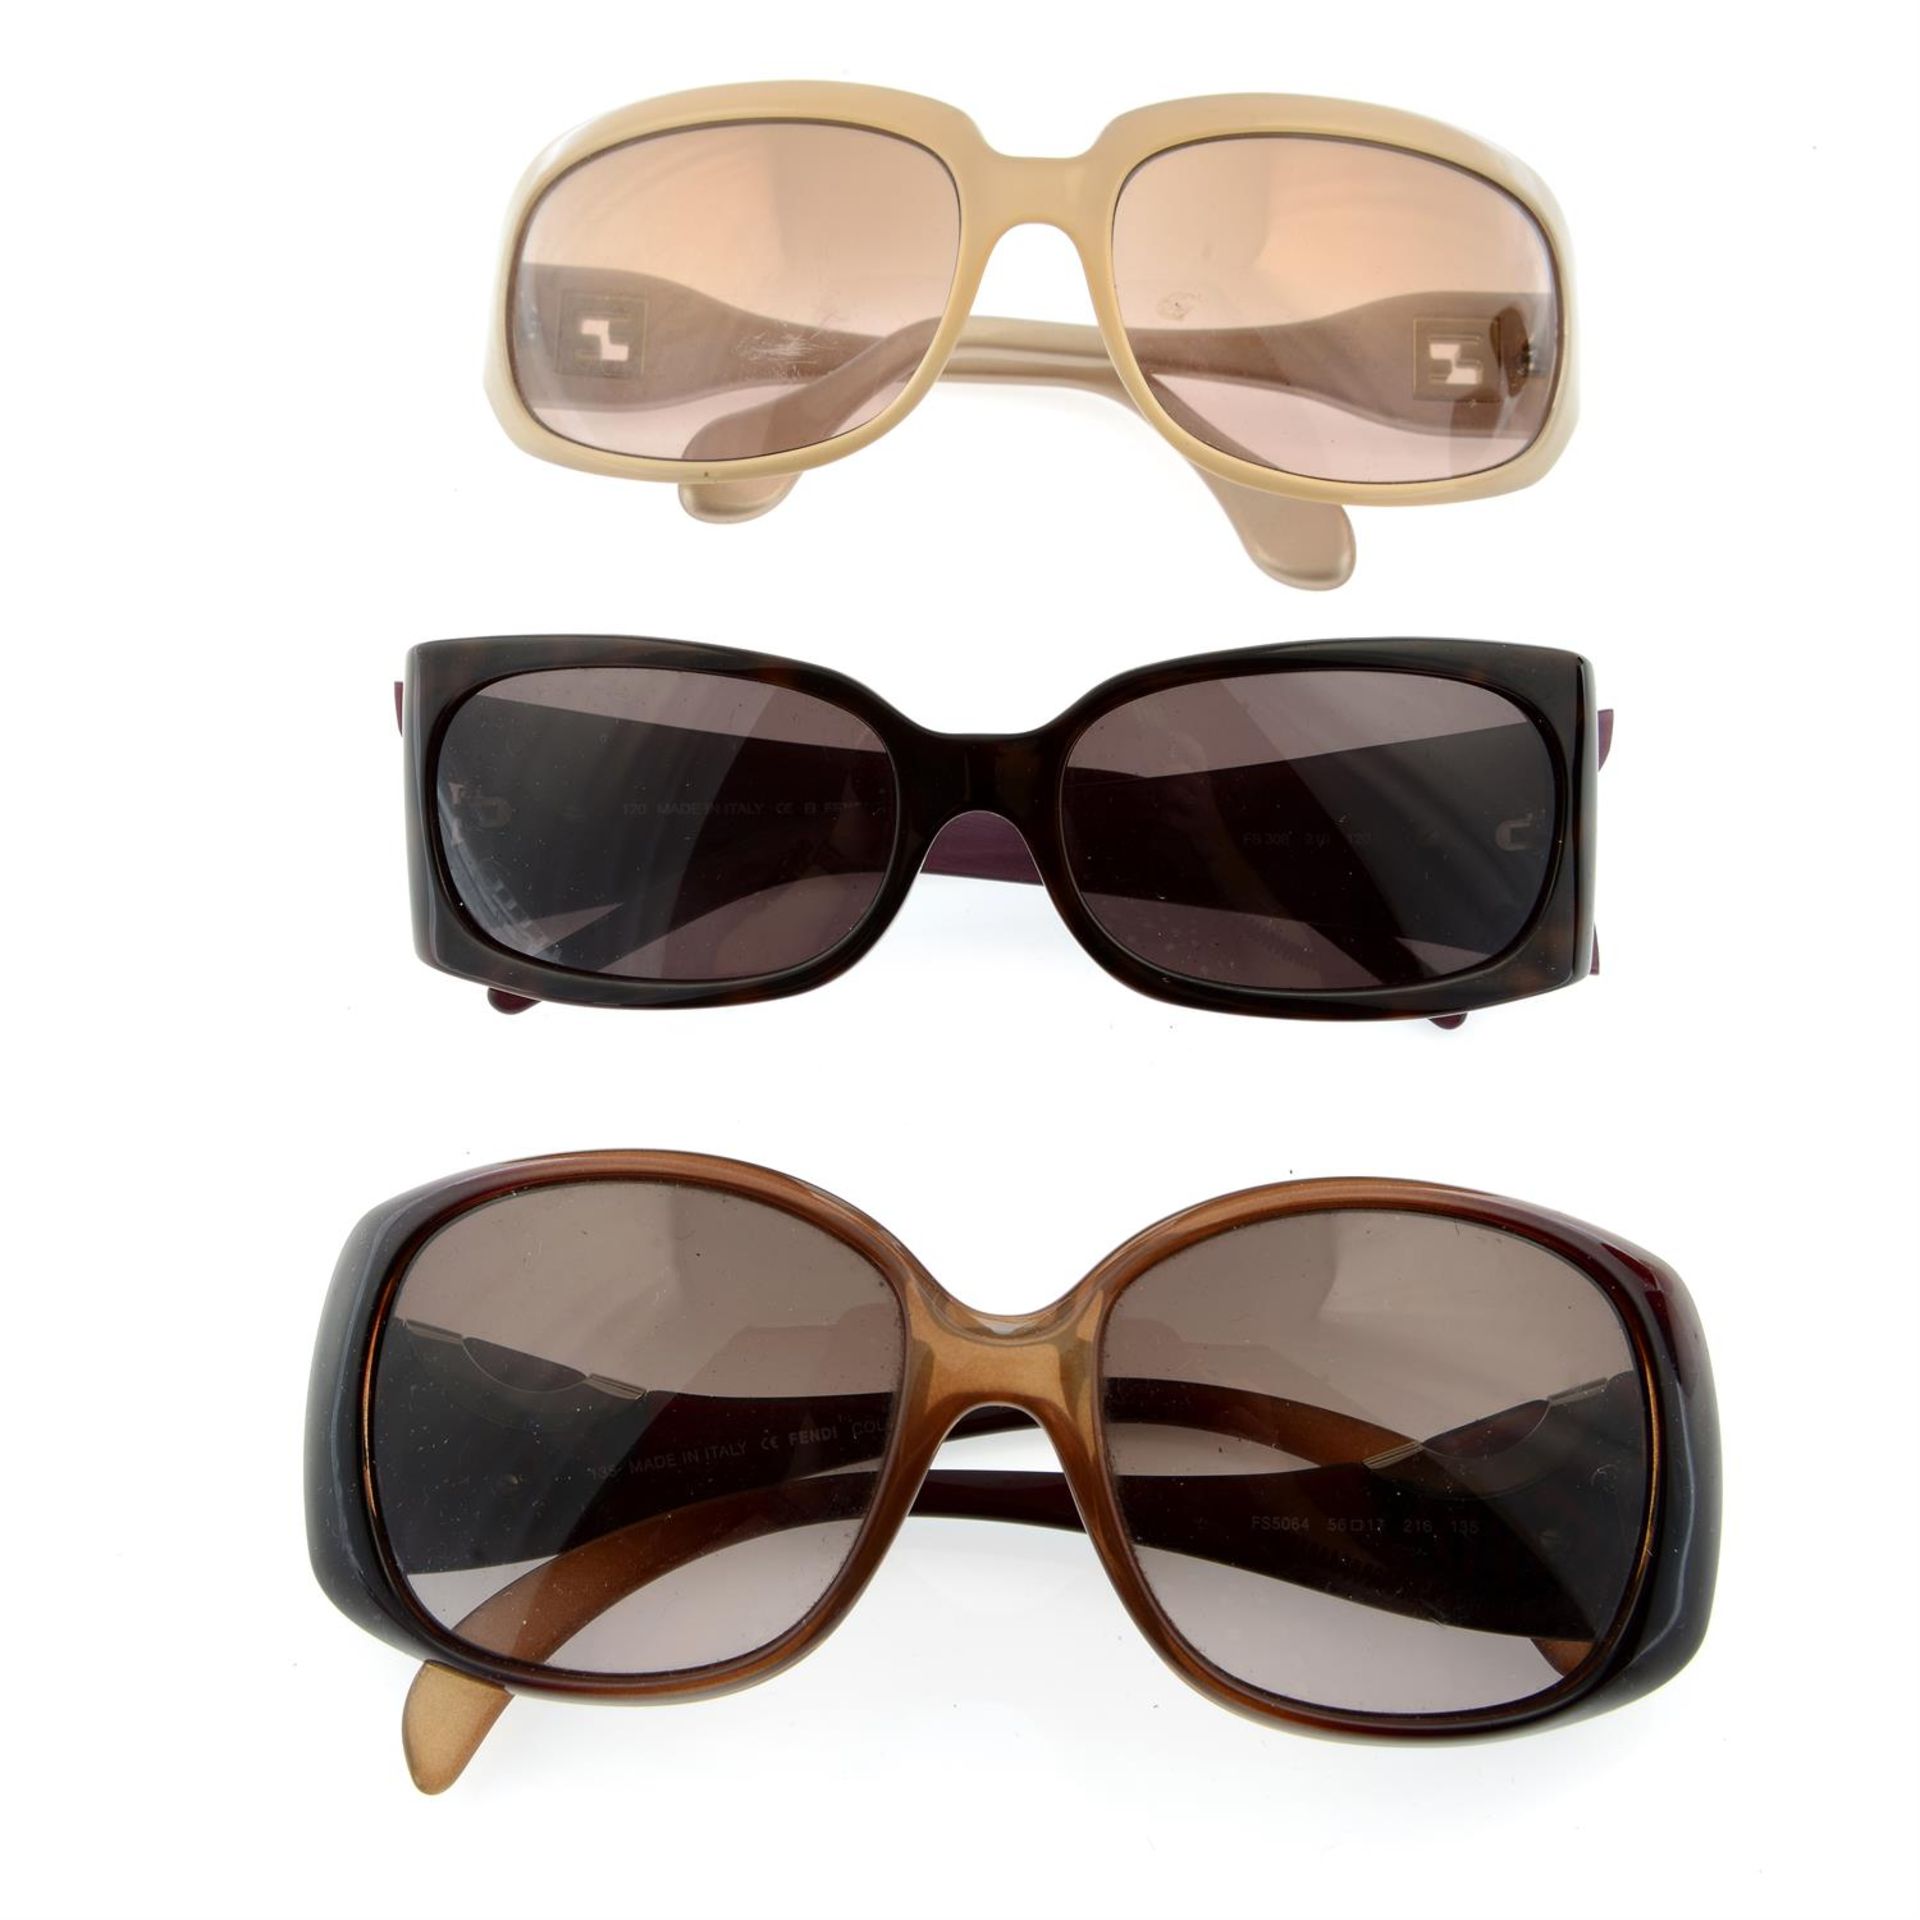 FENDI - three pairs of sunglasses.